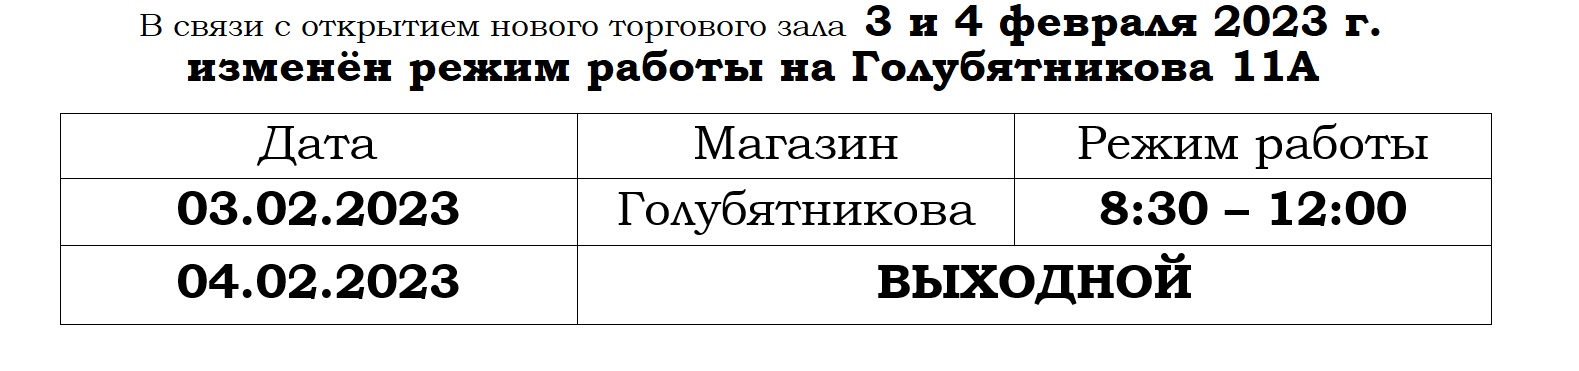 закрытие Голубятникова 03 и 04 февраля 2023